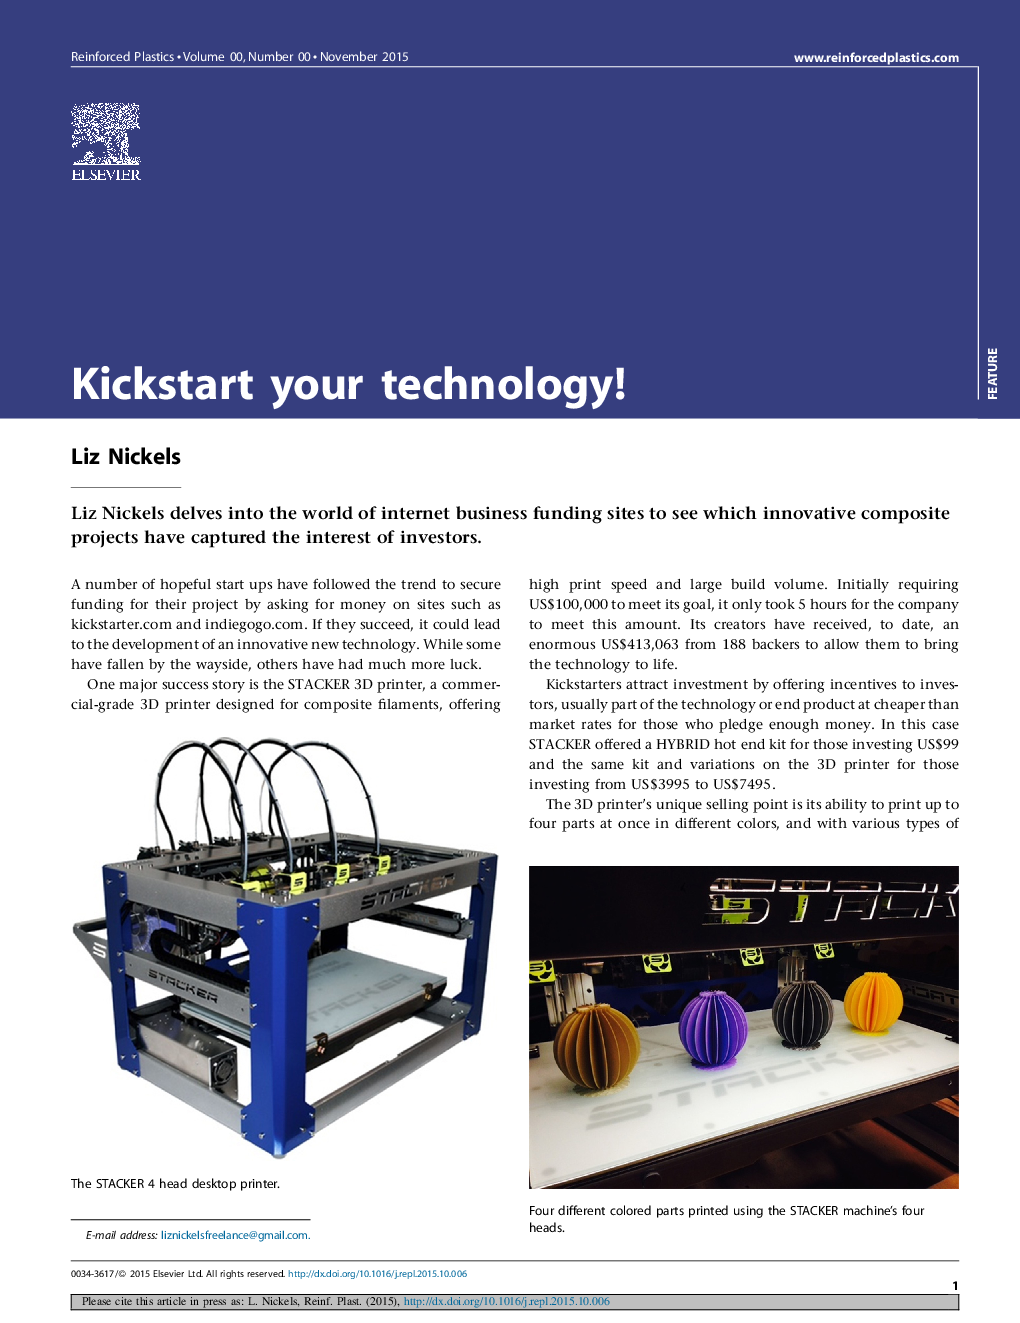 Kickstart your technology!